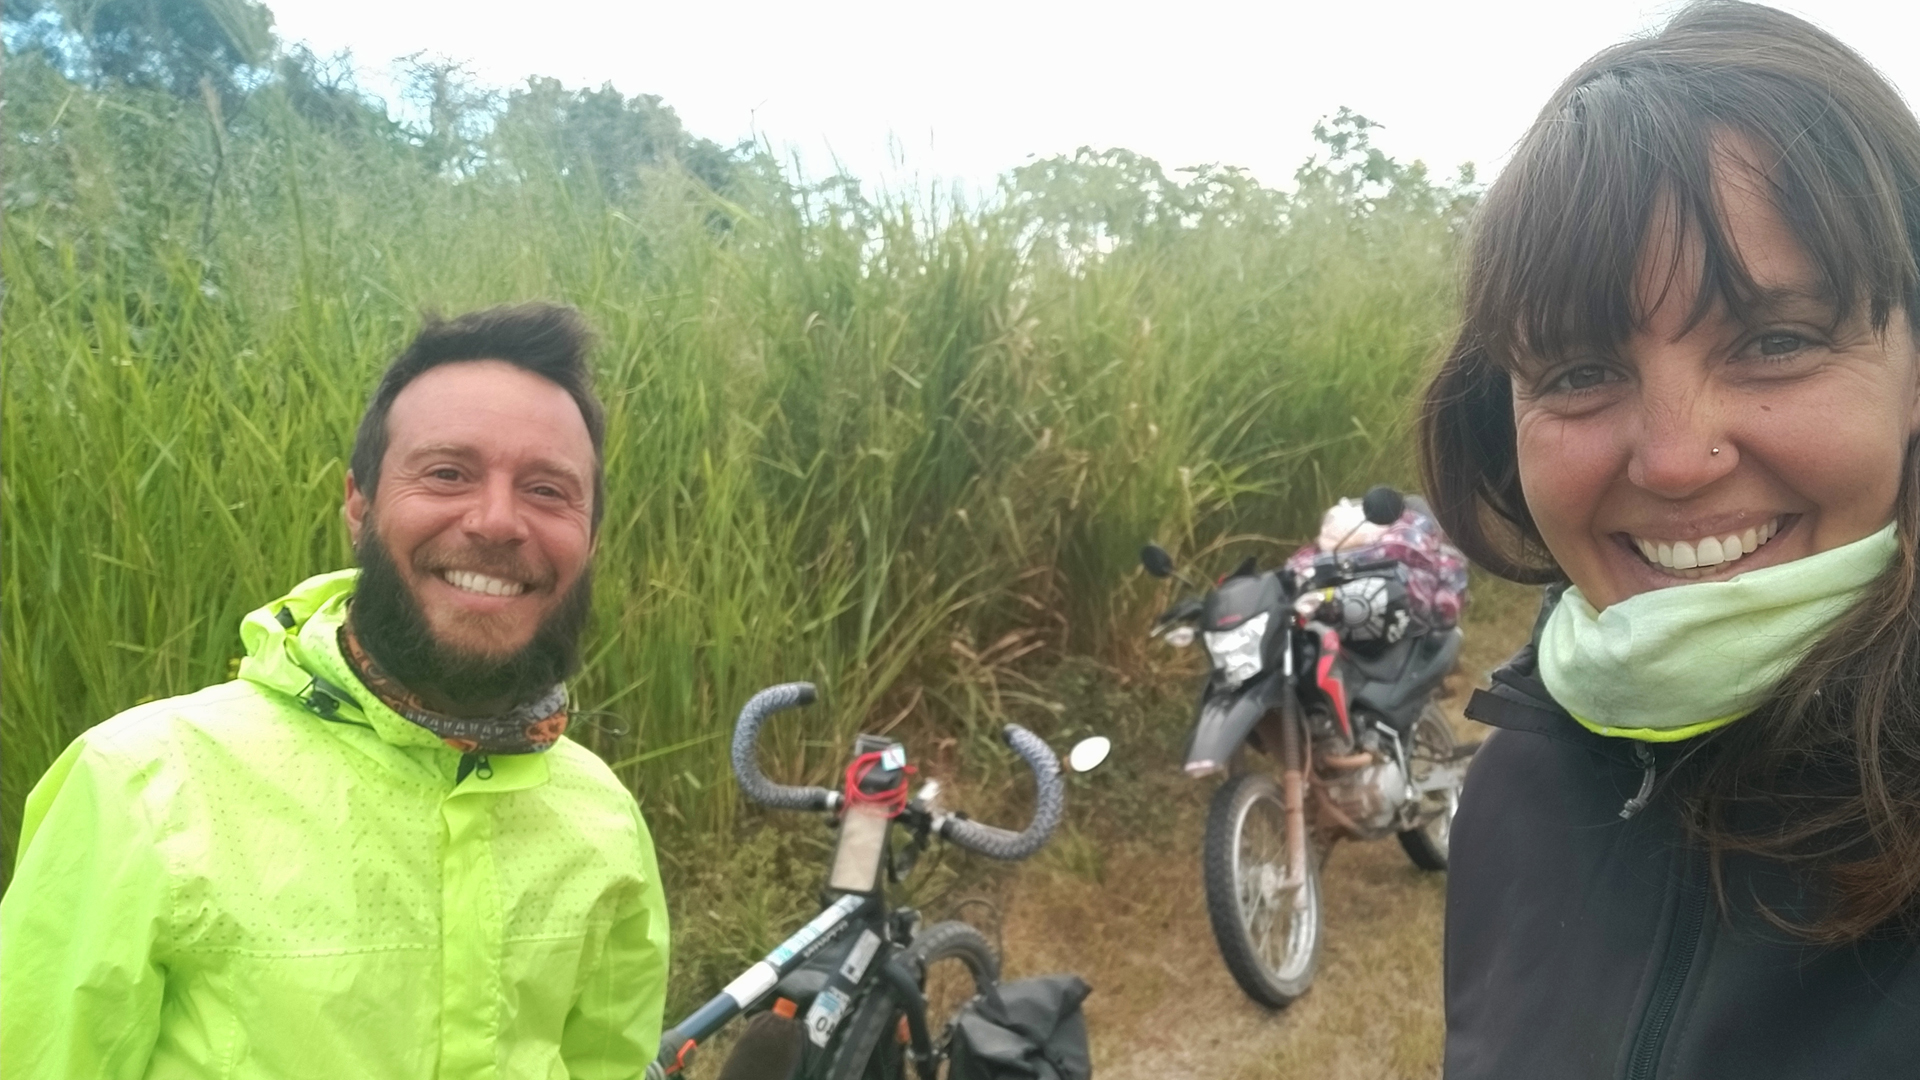 La foto del día en que se conocieron Lucas y Aldana, dos apasionados viajeros que coincidieron en la ruta 40 (Instagram @porlatierrayelmar)